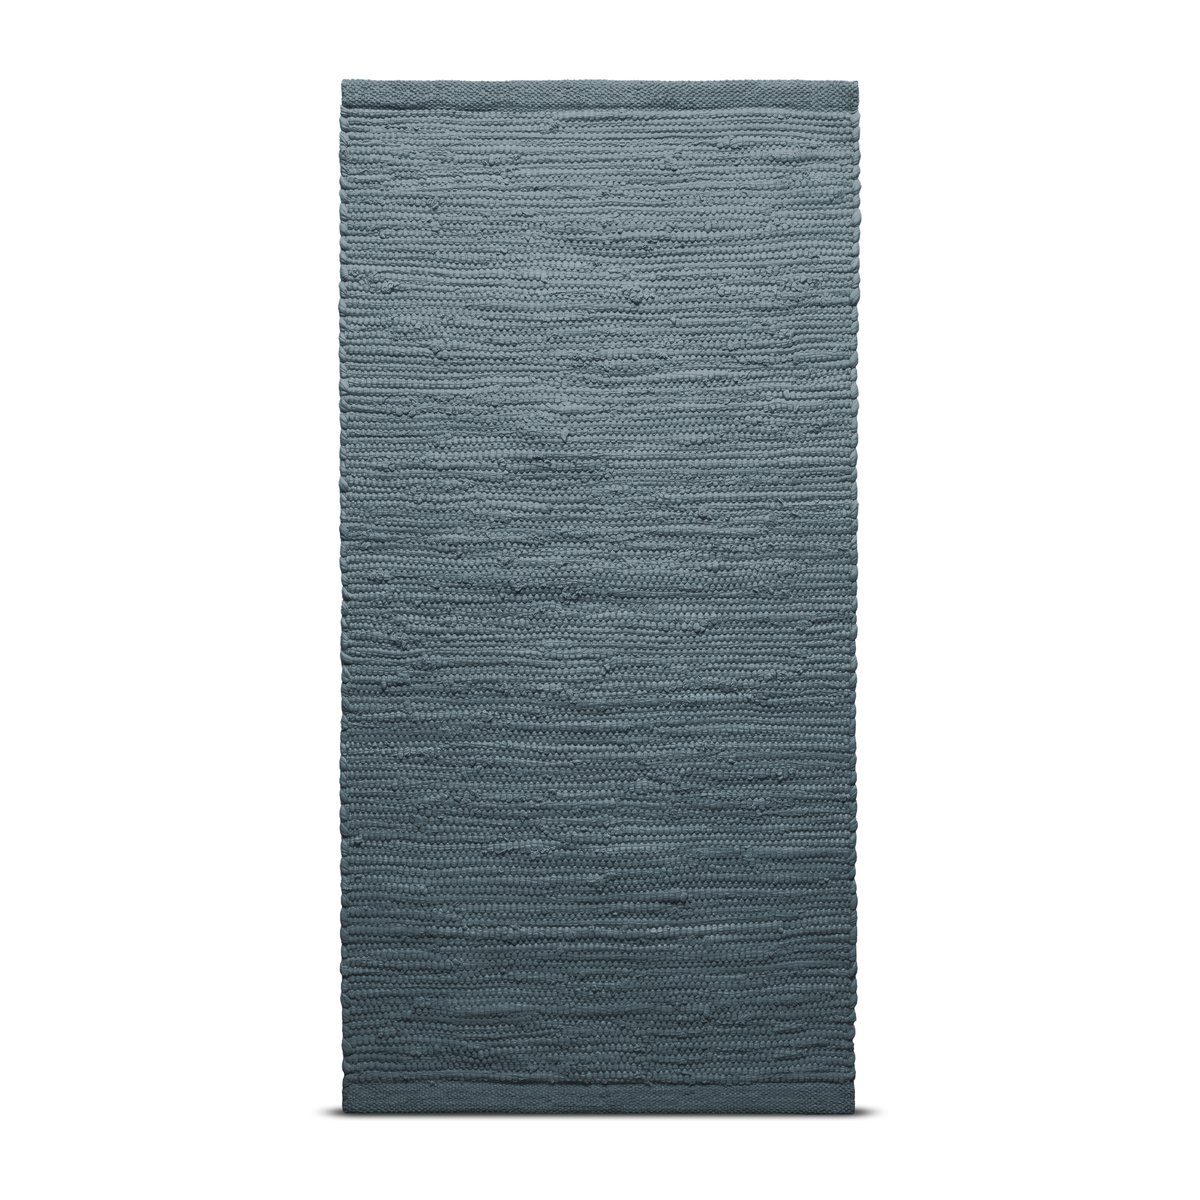 Rug Solid Cotton vloerkleed 75 x 300 cm. Steel grey (grijs)